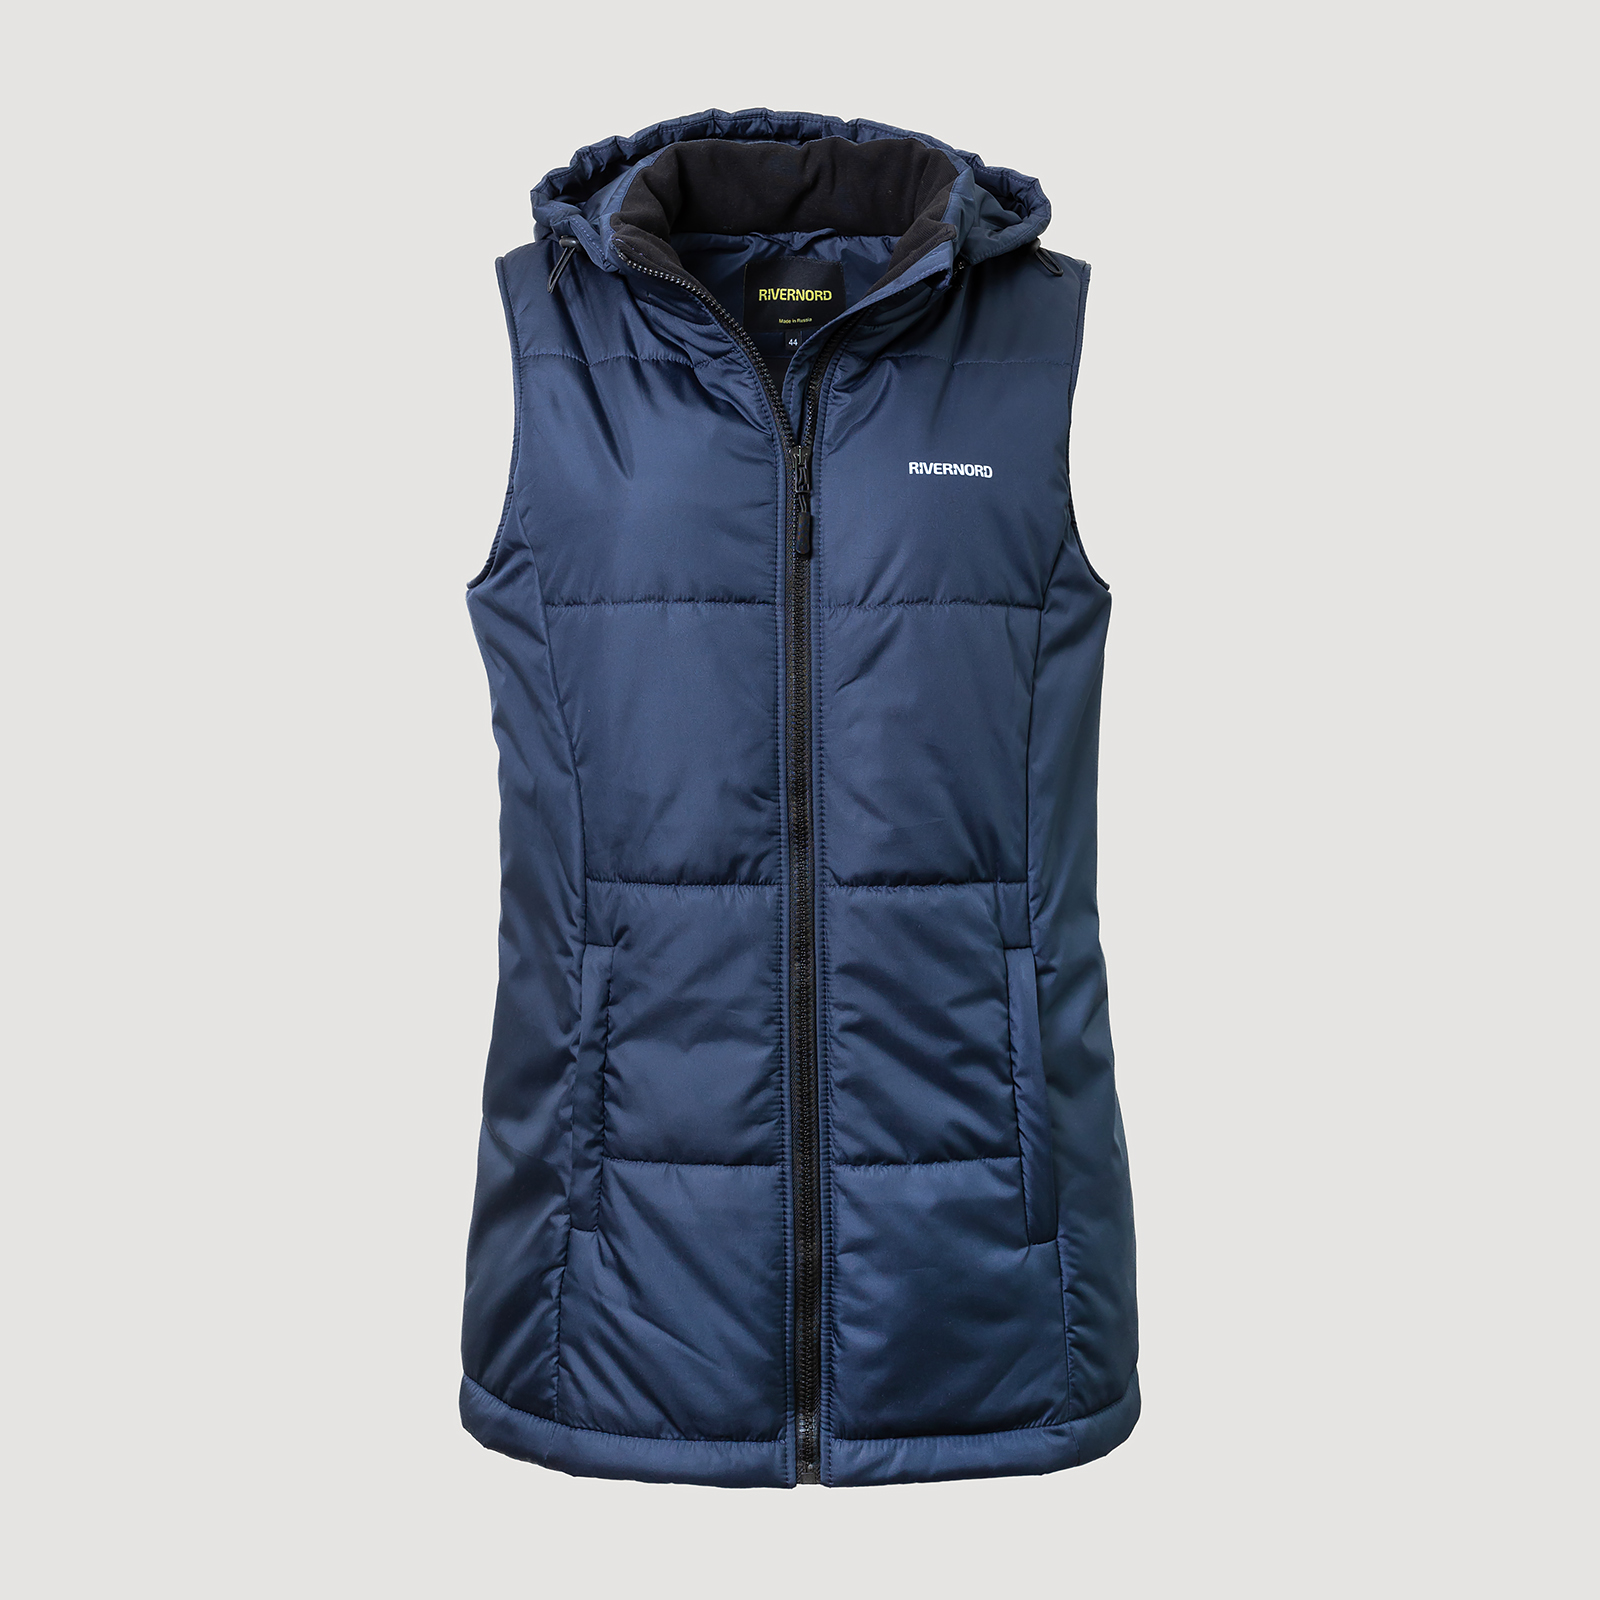 Женский утепленный жилет Elegance Winter Vest Original цвет темно-синий